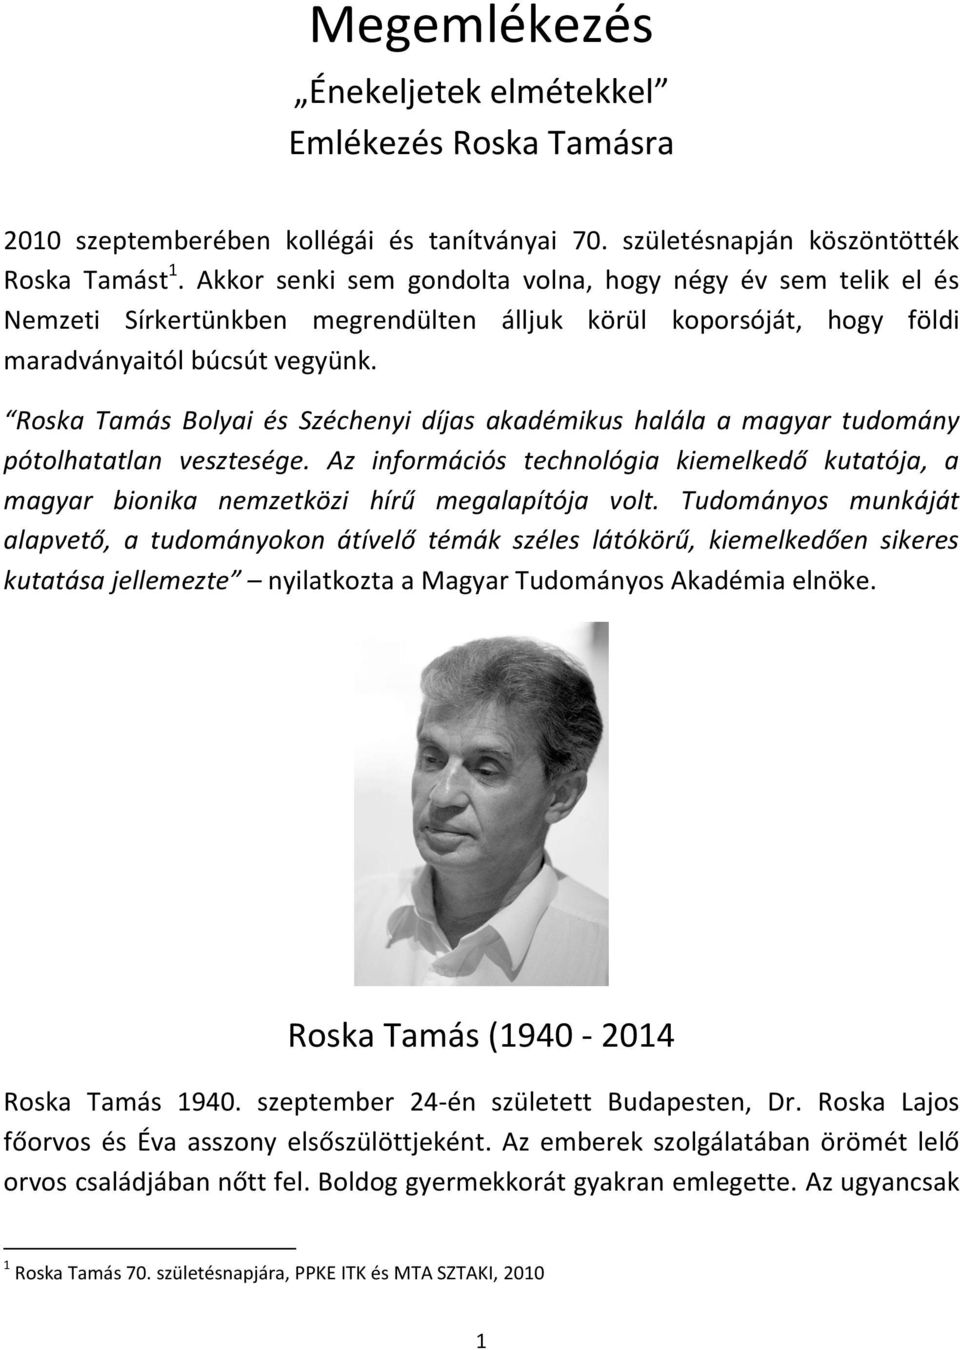 Roska Tamás Bolyai és Széchenyi díjas akadémikus halála a magyar tudomány pótolhatatlan vesztesége. Az információs technológia kiemelkedő kutatója, a magyar bionika nemzetközi hírű megalapítója volt.